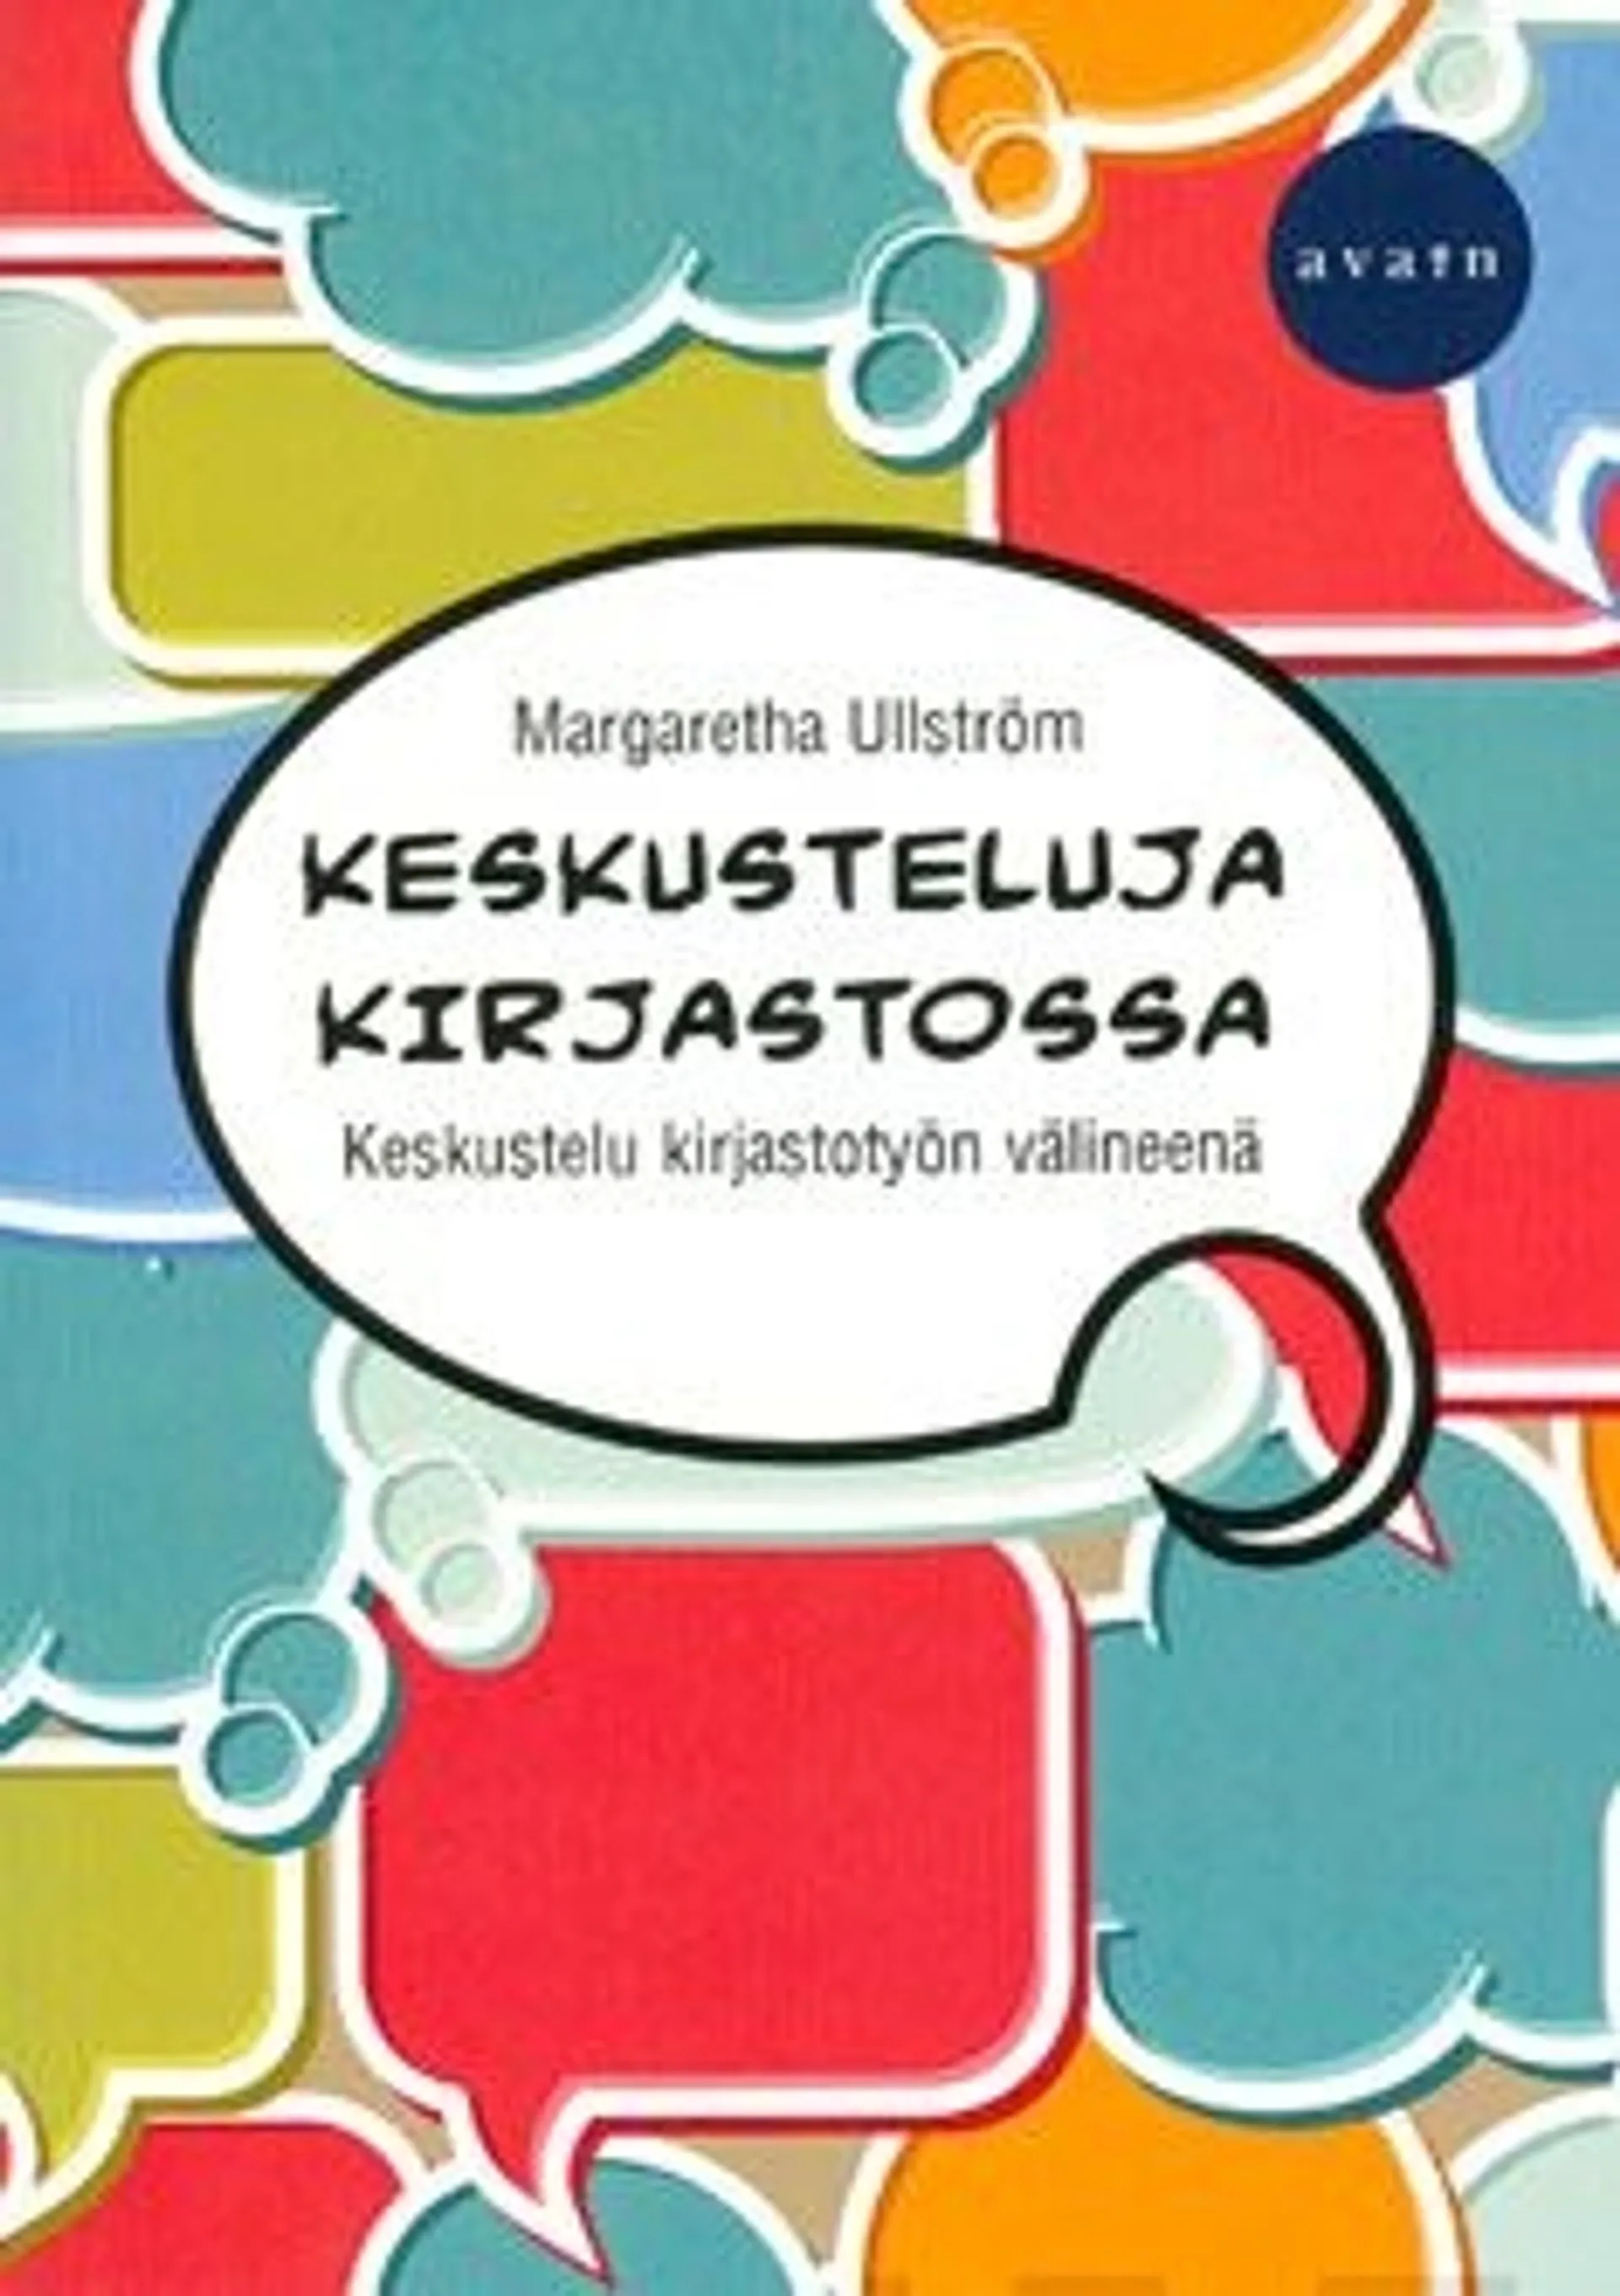 Ullström, Keskusteluja kirjastossa